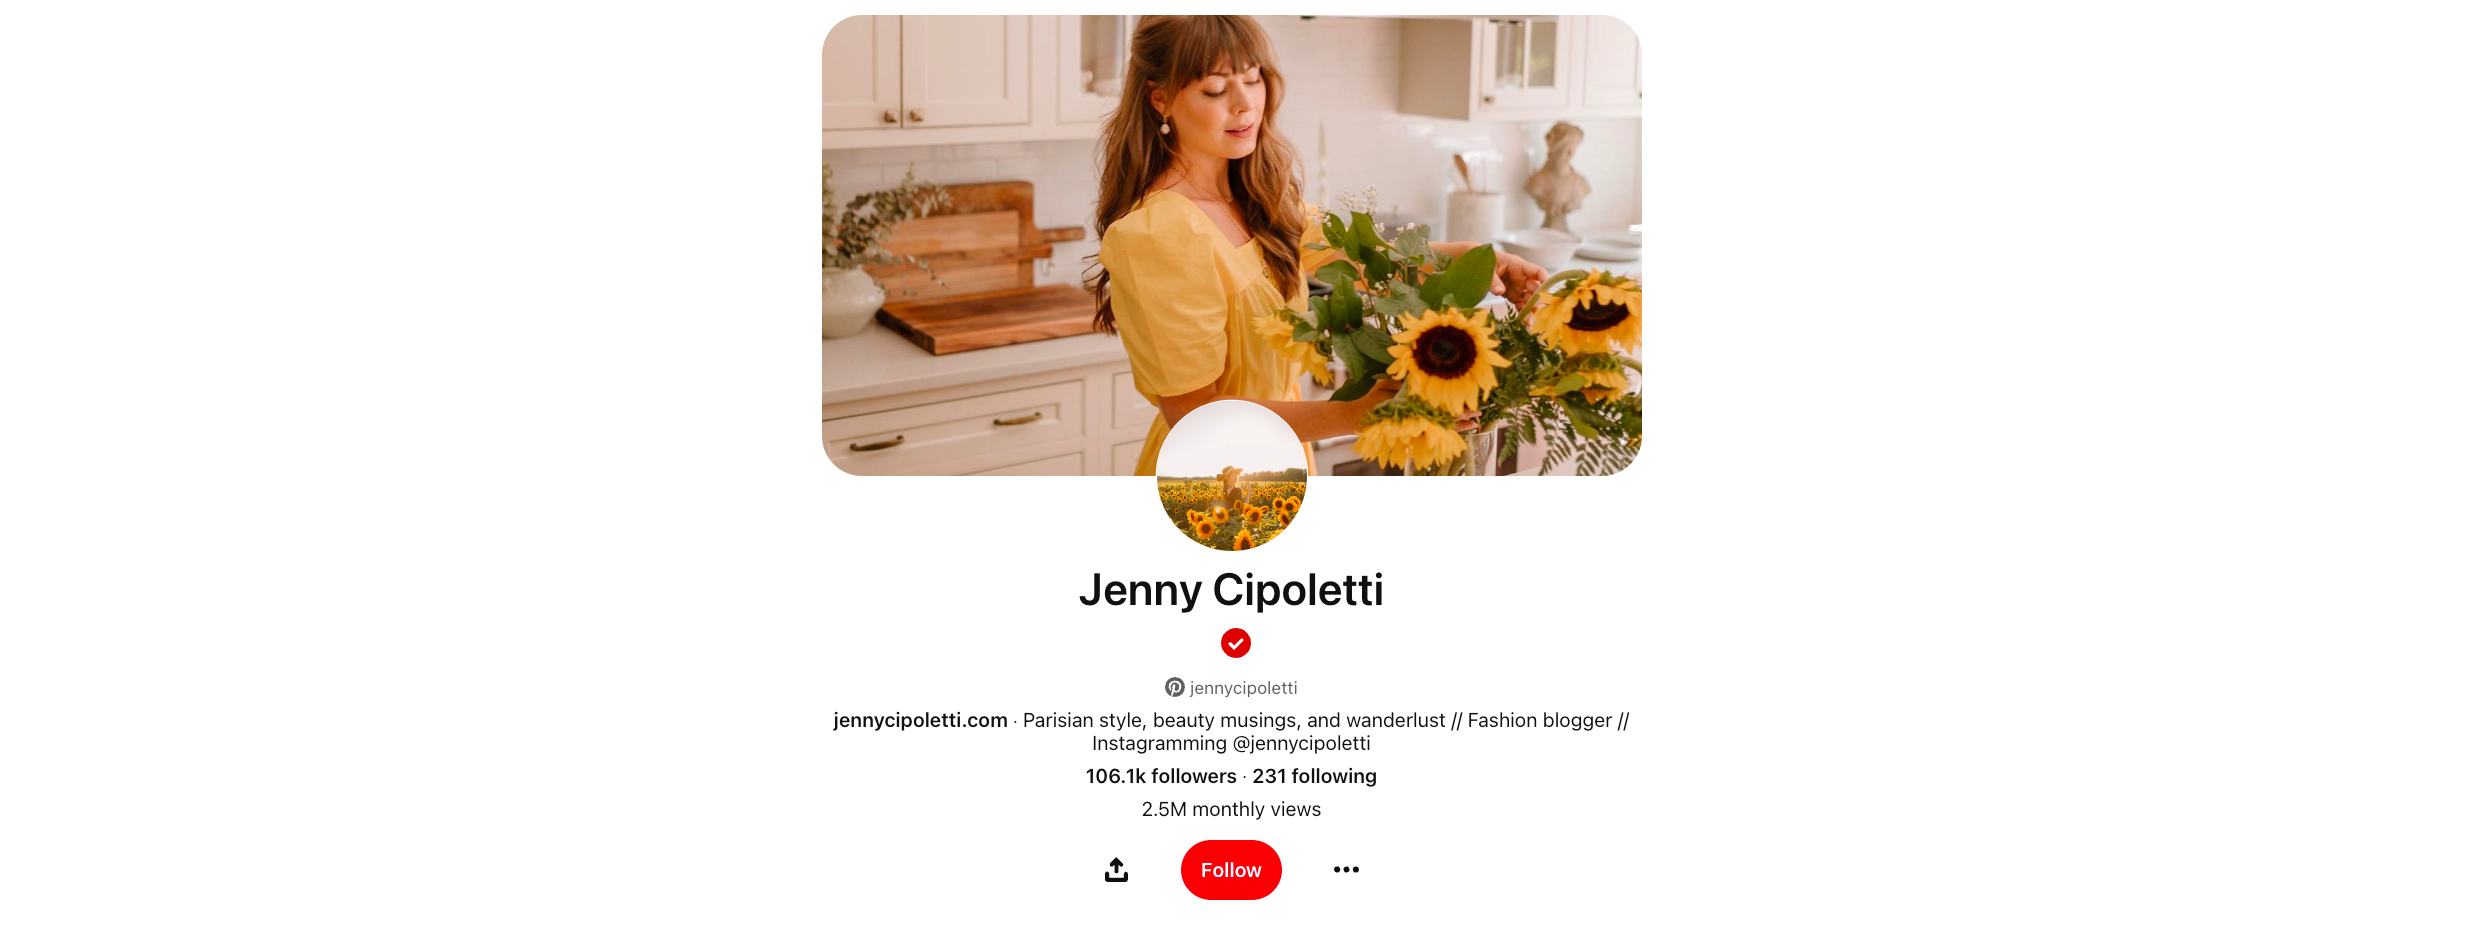 Success Story - Jenny Cipoletti